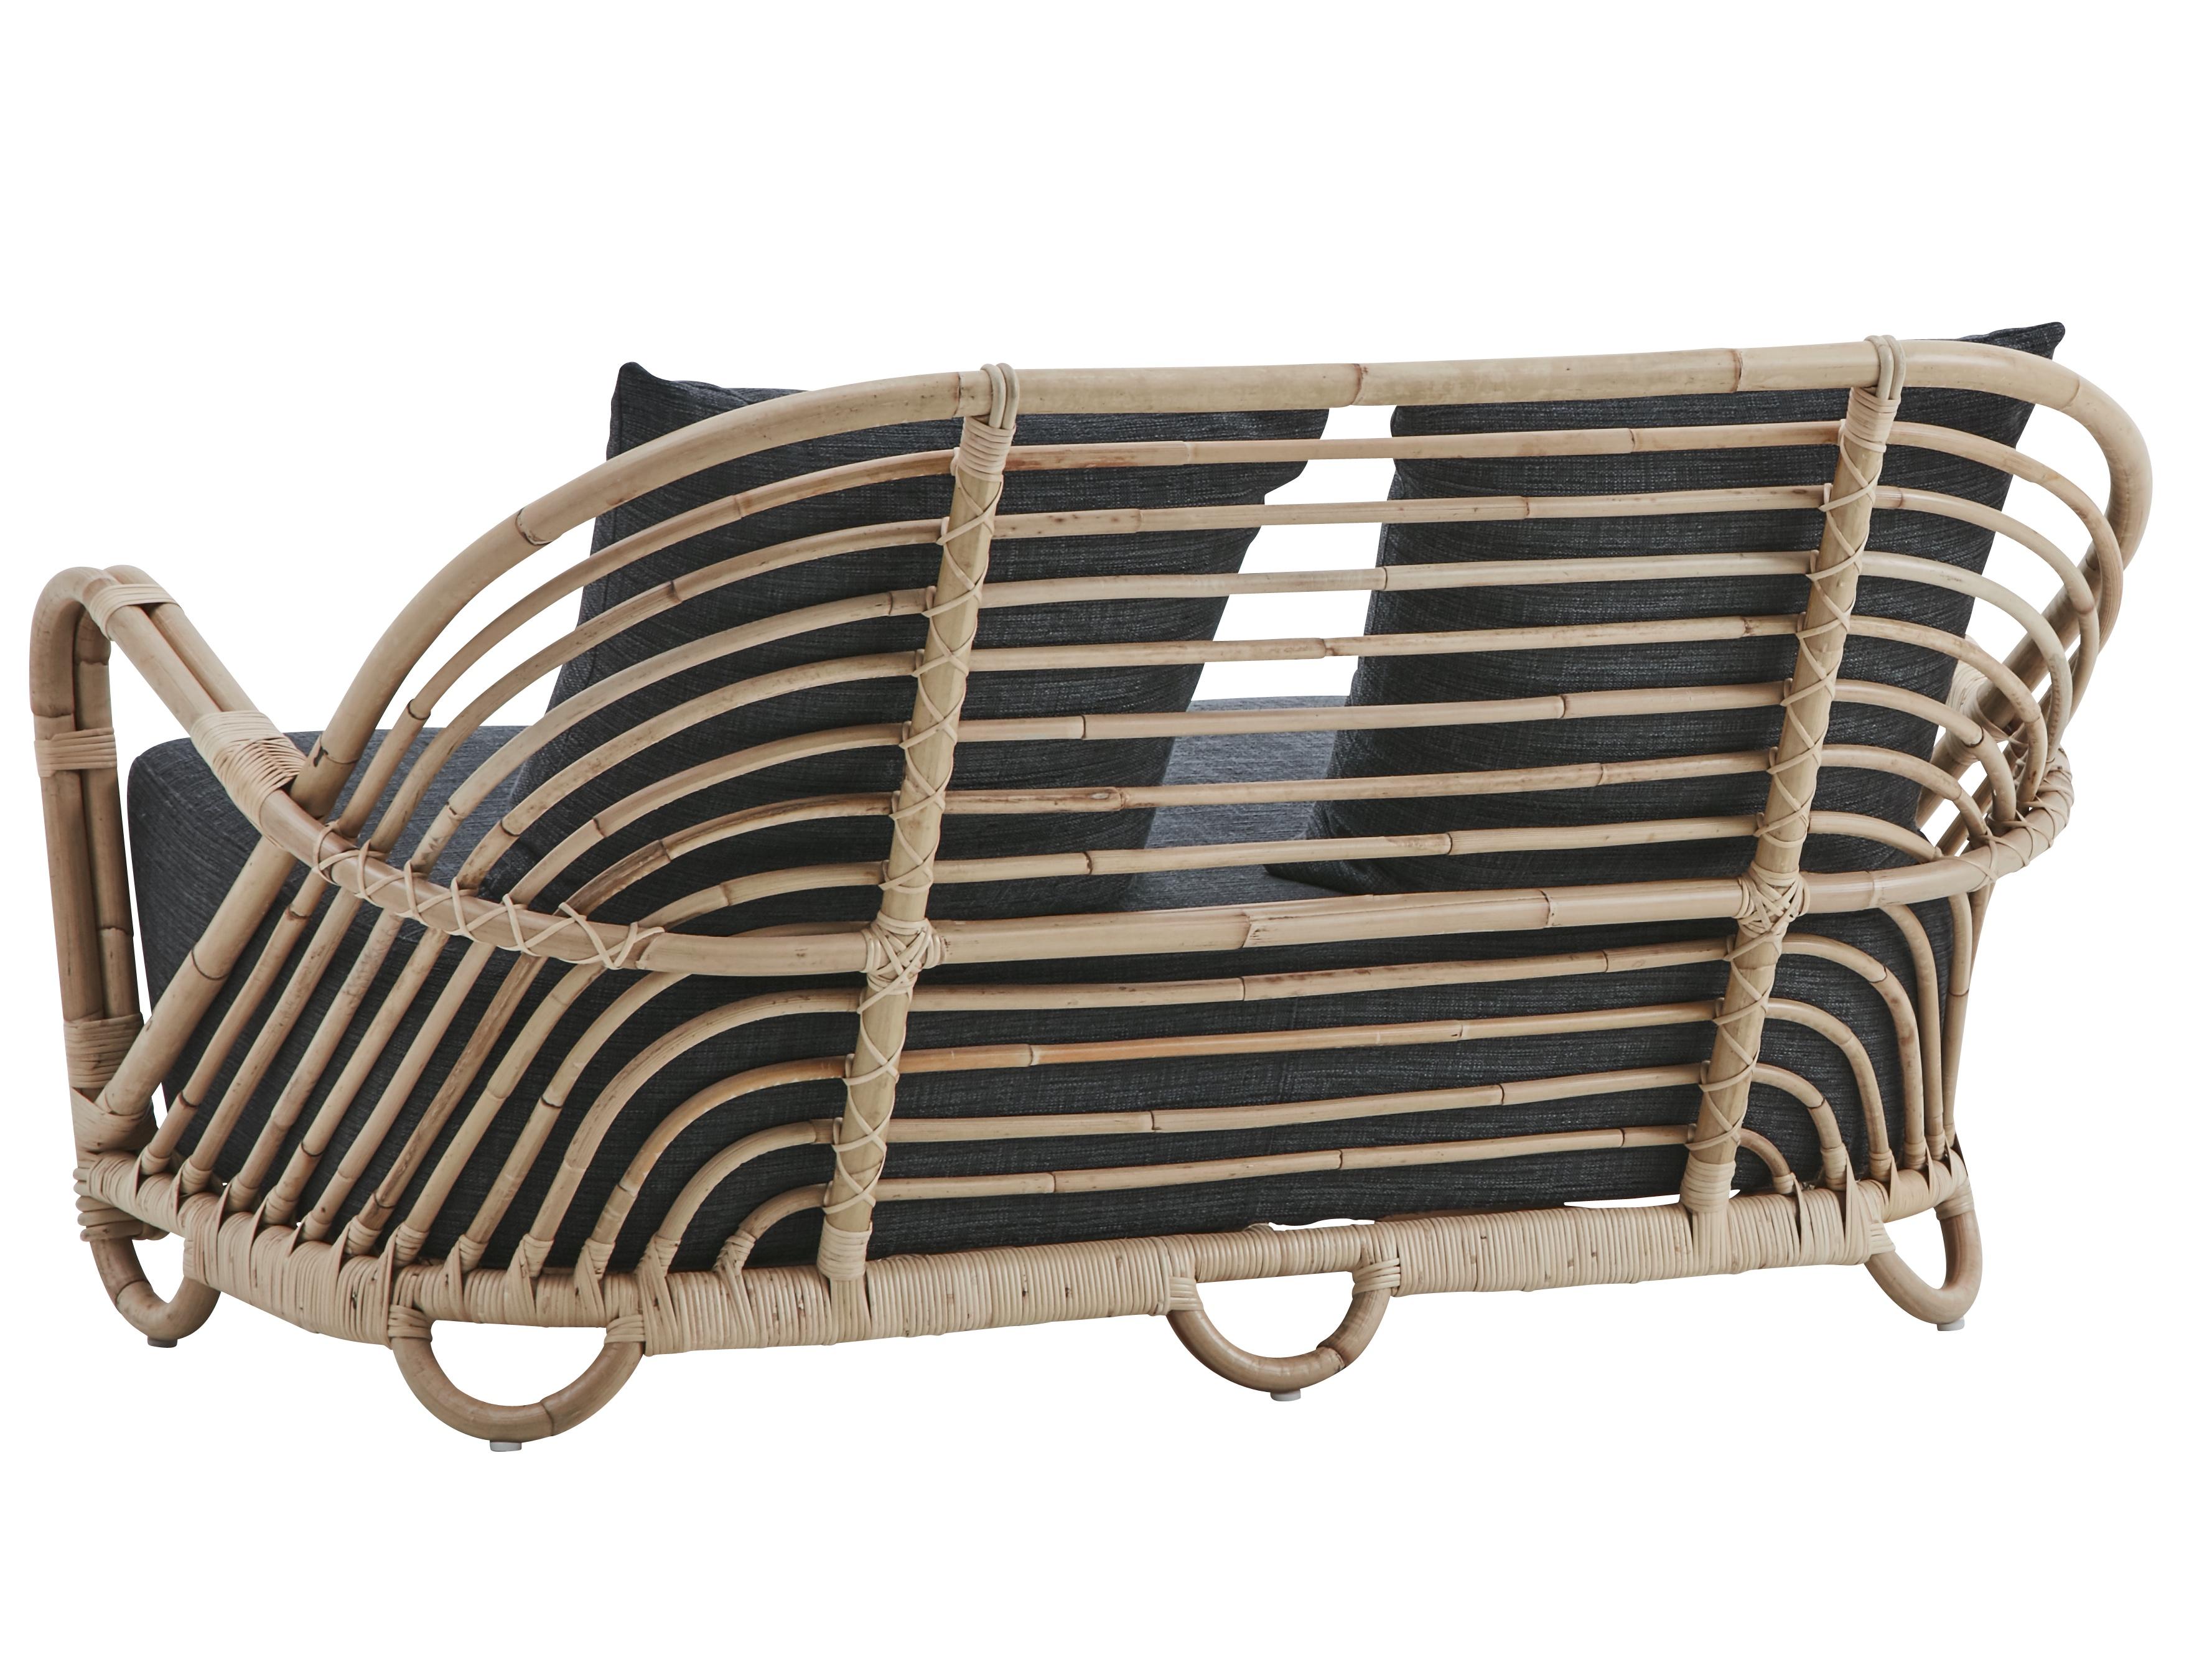 Charlottenborg Lounge-Sofa. 2 Sitze, von Arne Jacobsen. Neue Ausgabe. Die geschwungene Form, die später sehr charakteristisch für die vielen berühmten Stühle von Arne Jacobsen wurde, ist in diesem sehr frühen Möbelstück bereits angedeutet. Das